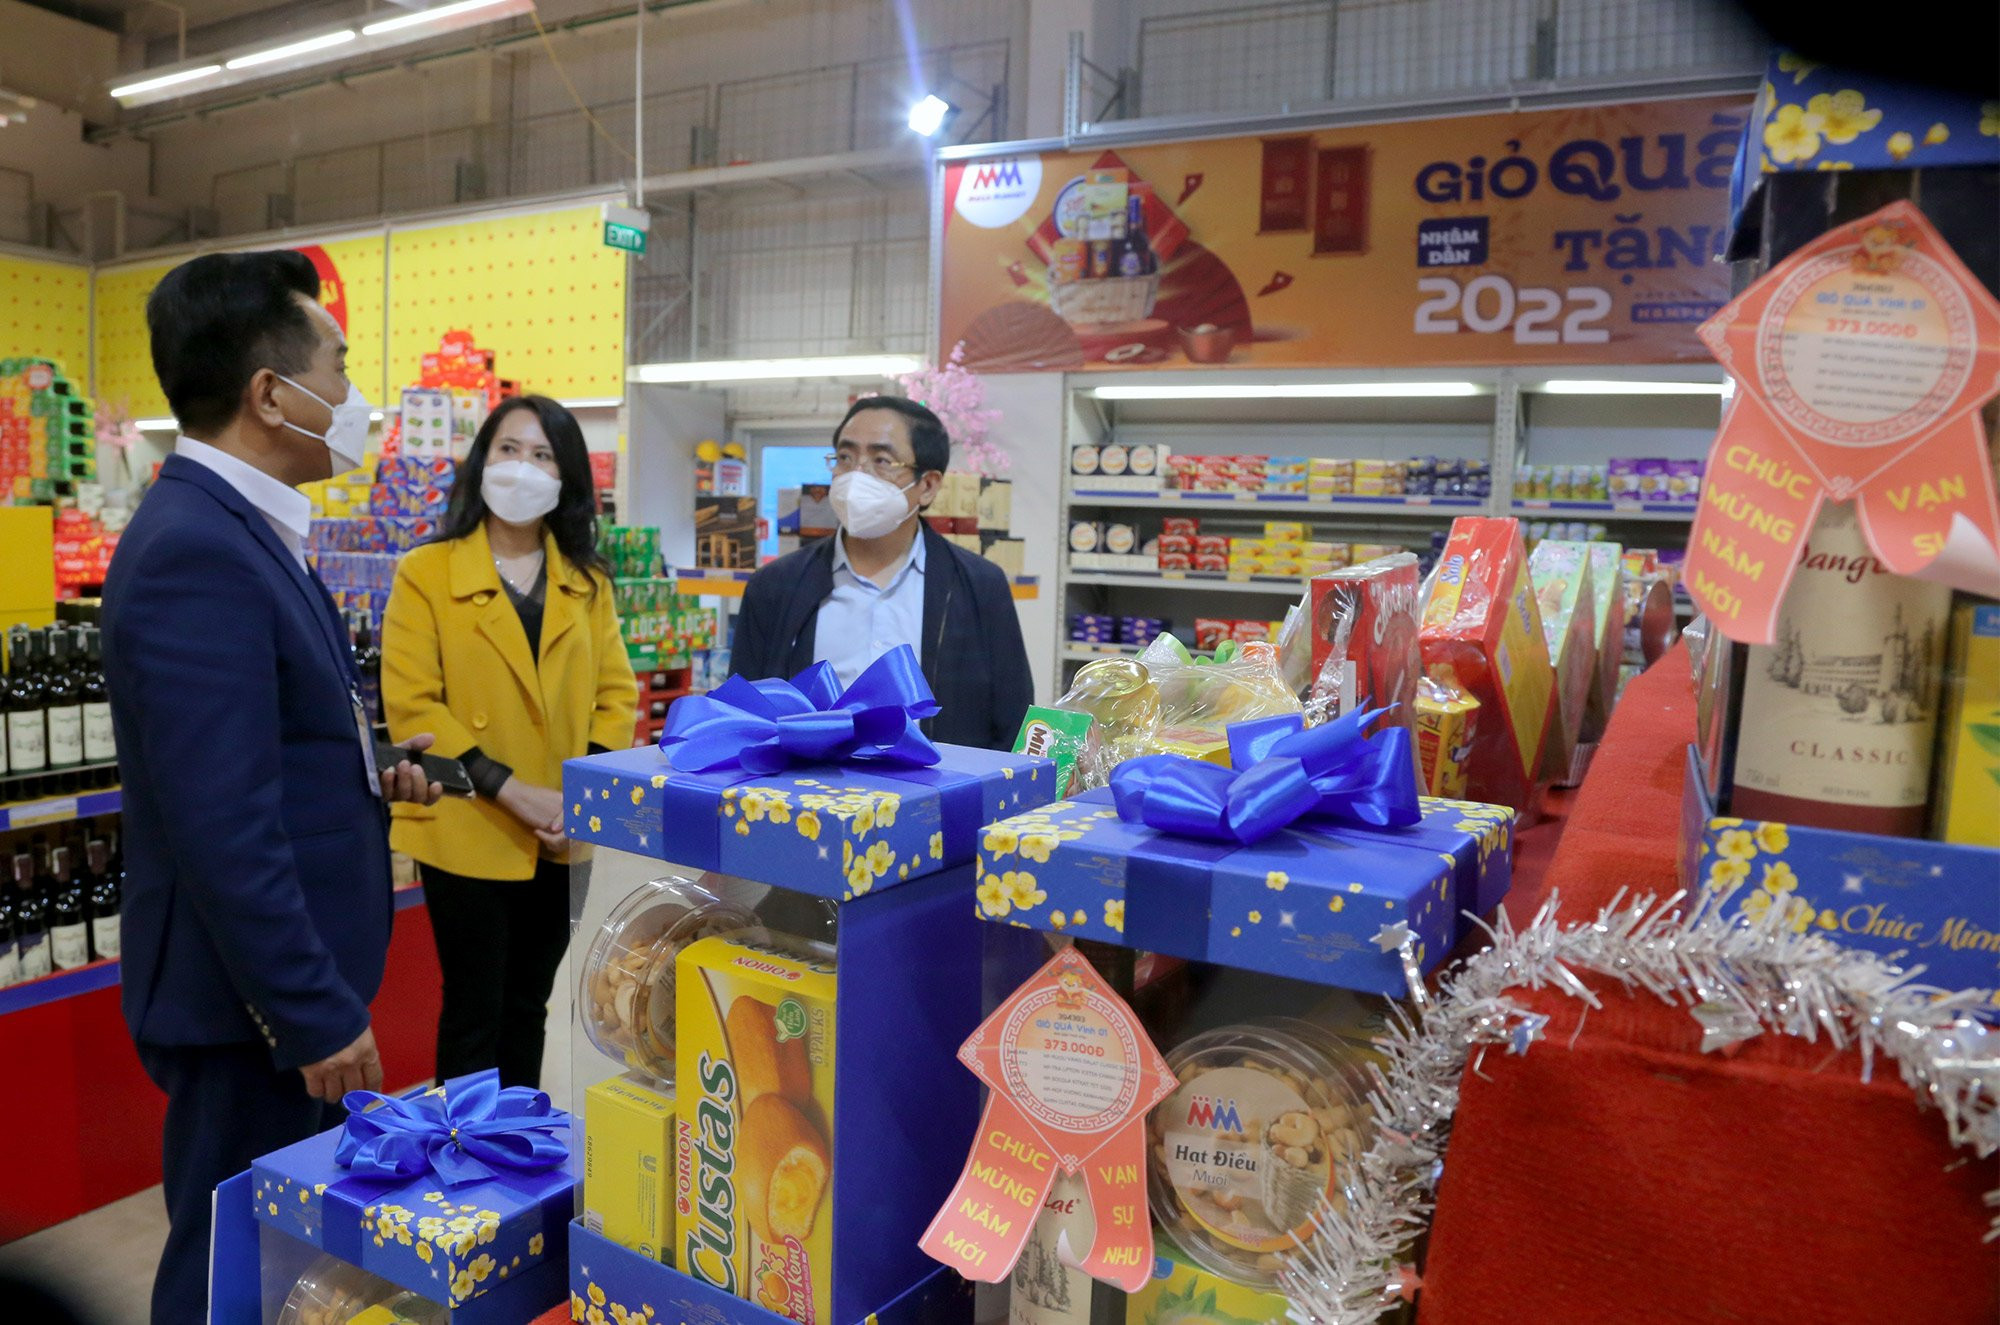 Lãnh đạo Sở Công thương kiểm tra tình hình cung ứng hàng hóa tại các siêu thị trên địa bàn thành phố Vinh. Ảnh Thu Huyền